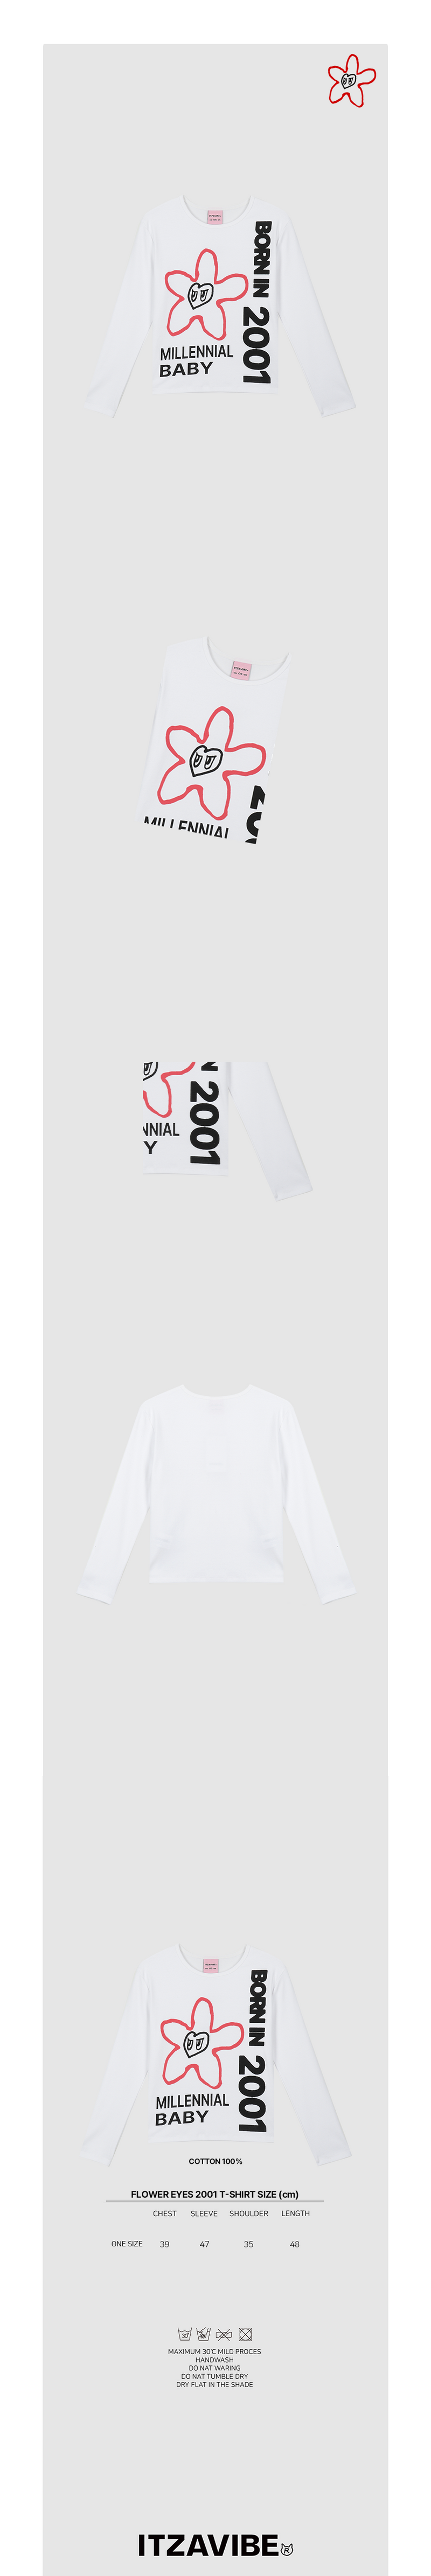 フラワーアイズ2001Tシャツ / FLOWER EYES 2001 T SHIRT - WHITE